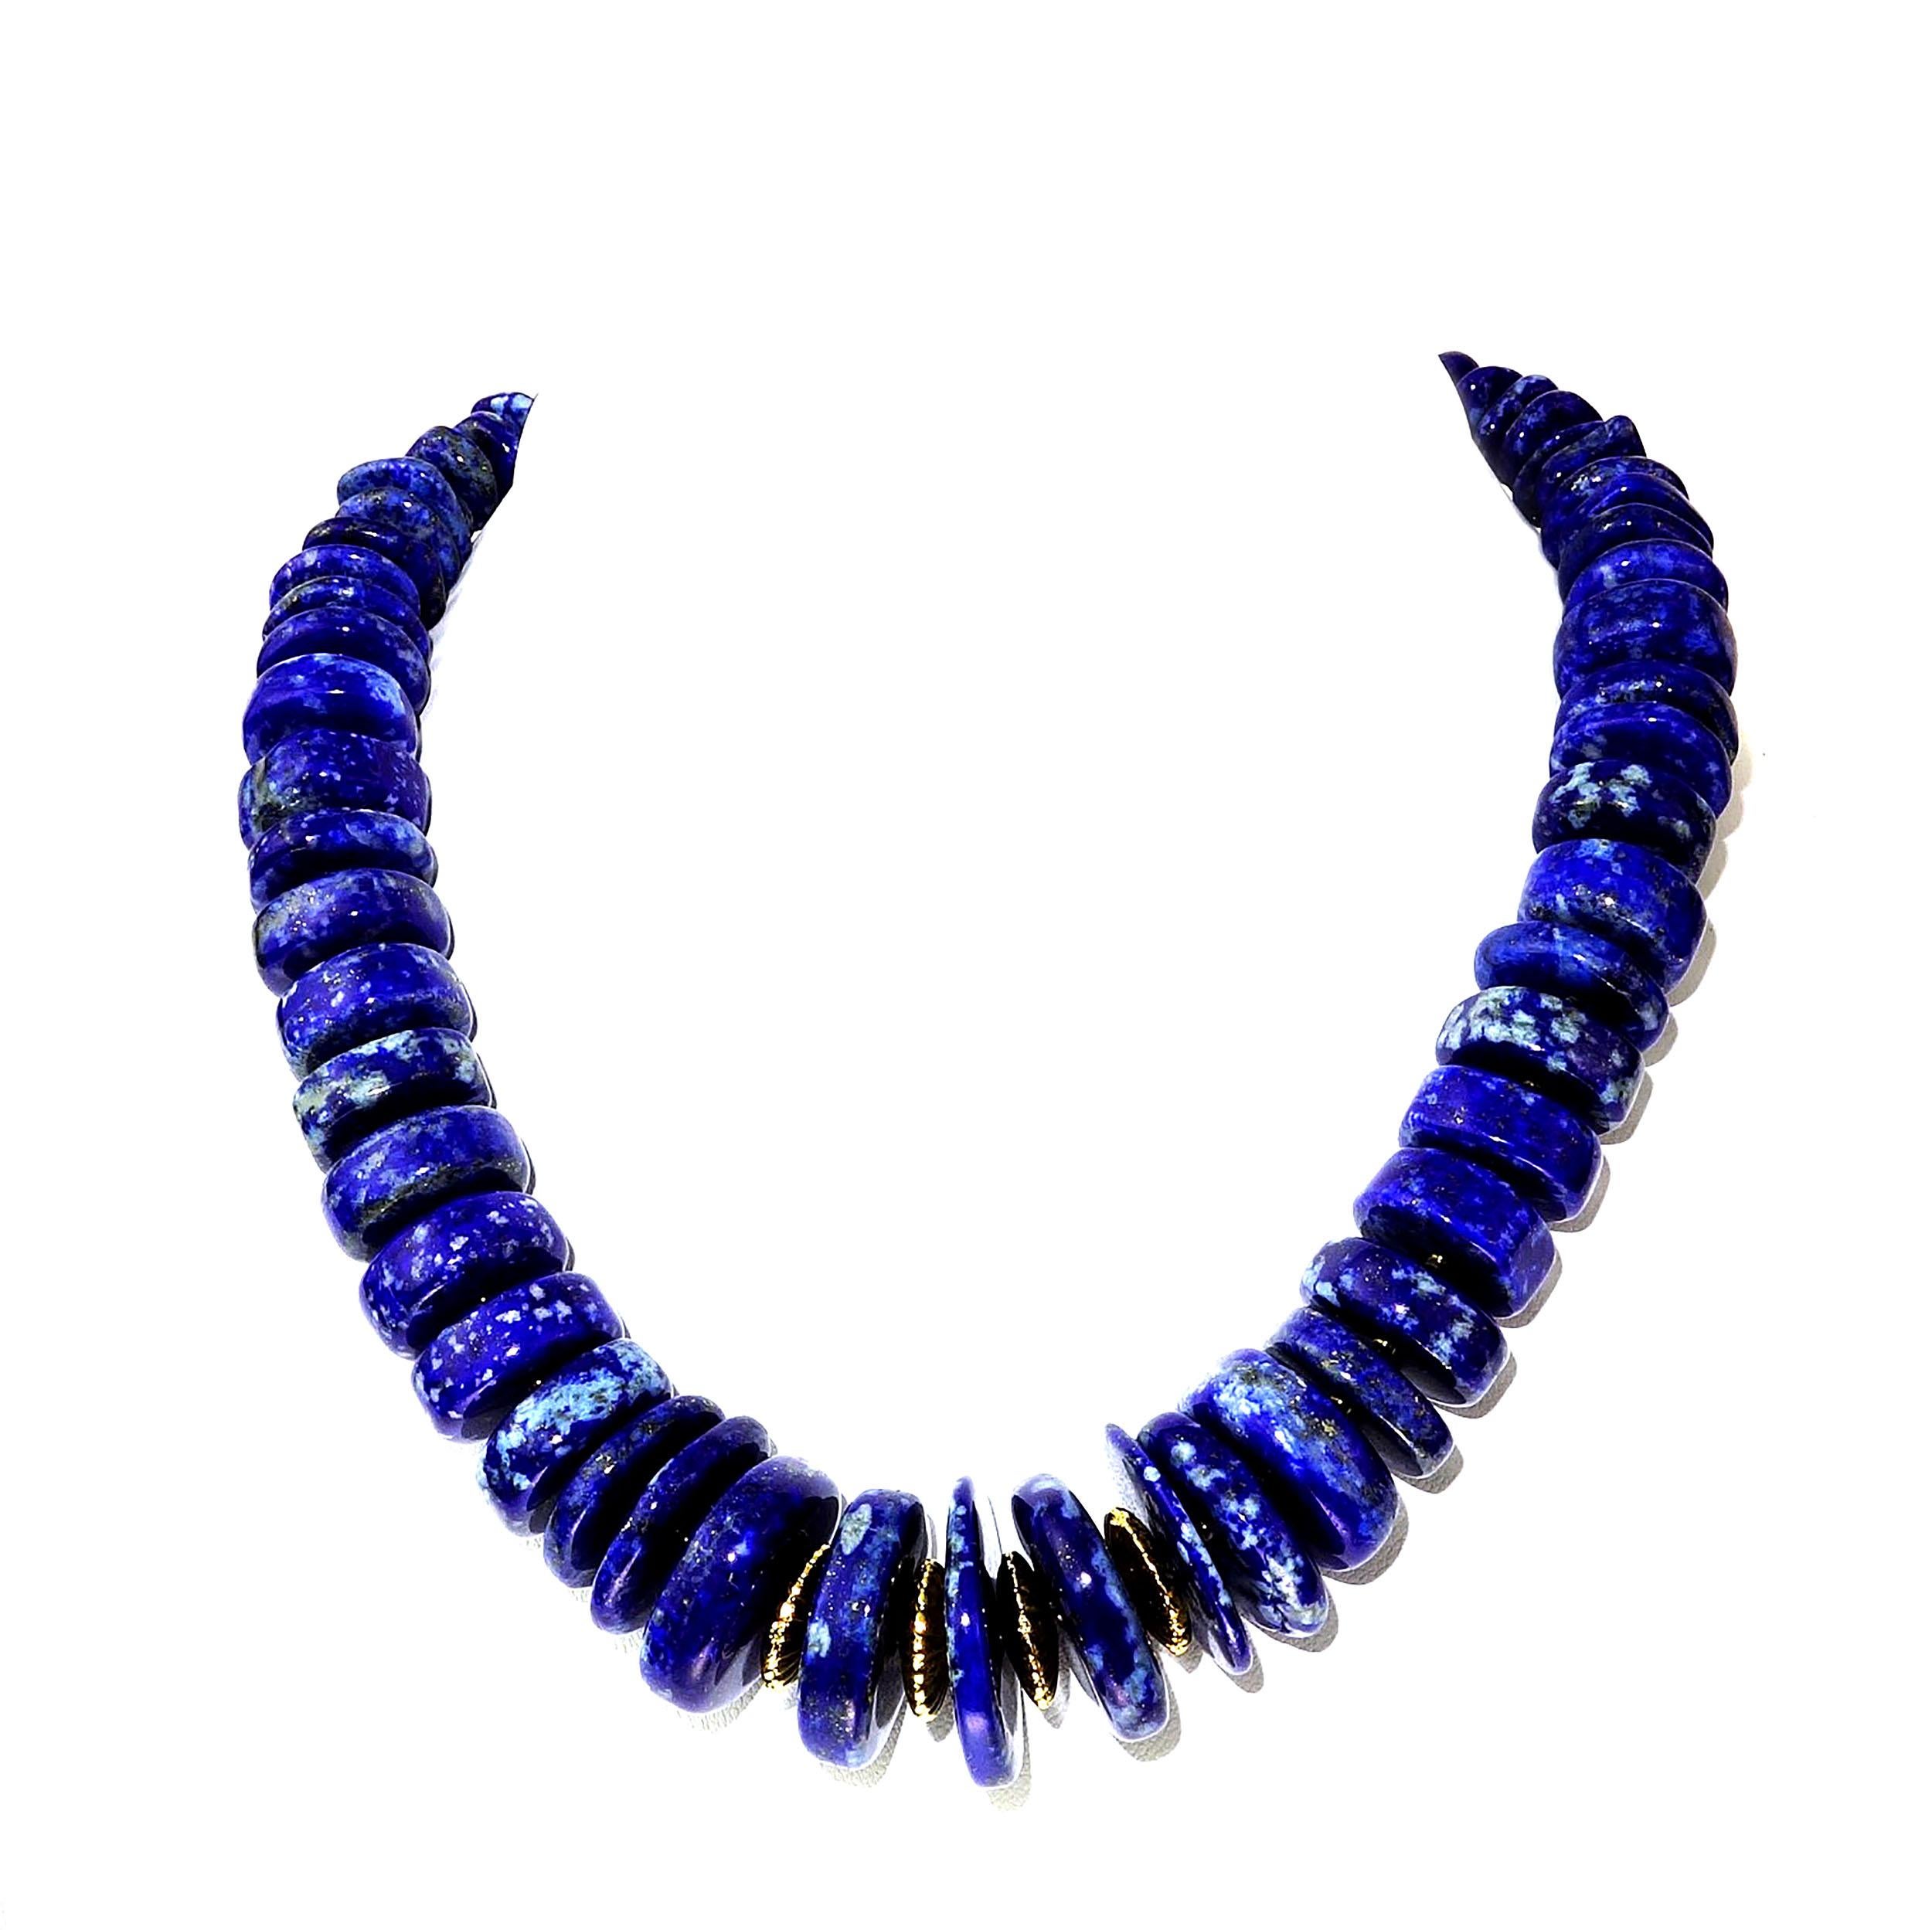 Artisan Statement Lapis Lazuli Graduated Choker Necklace